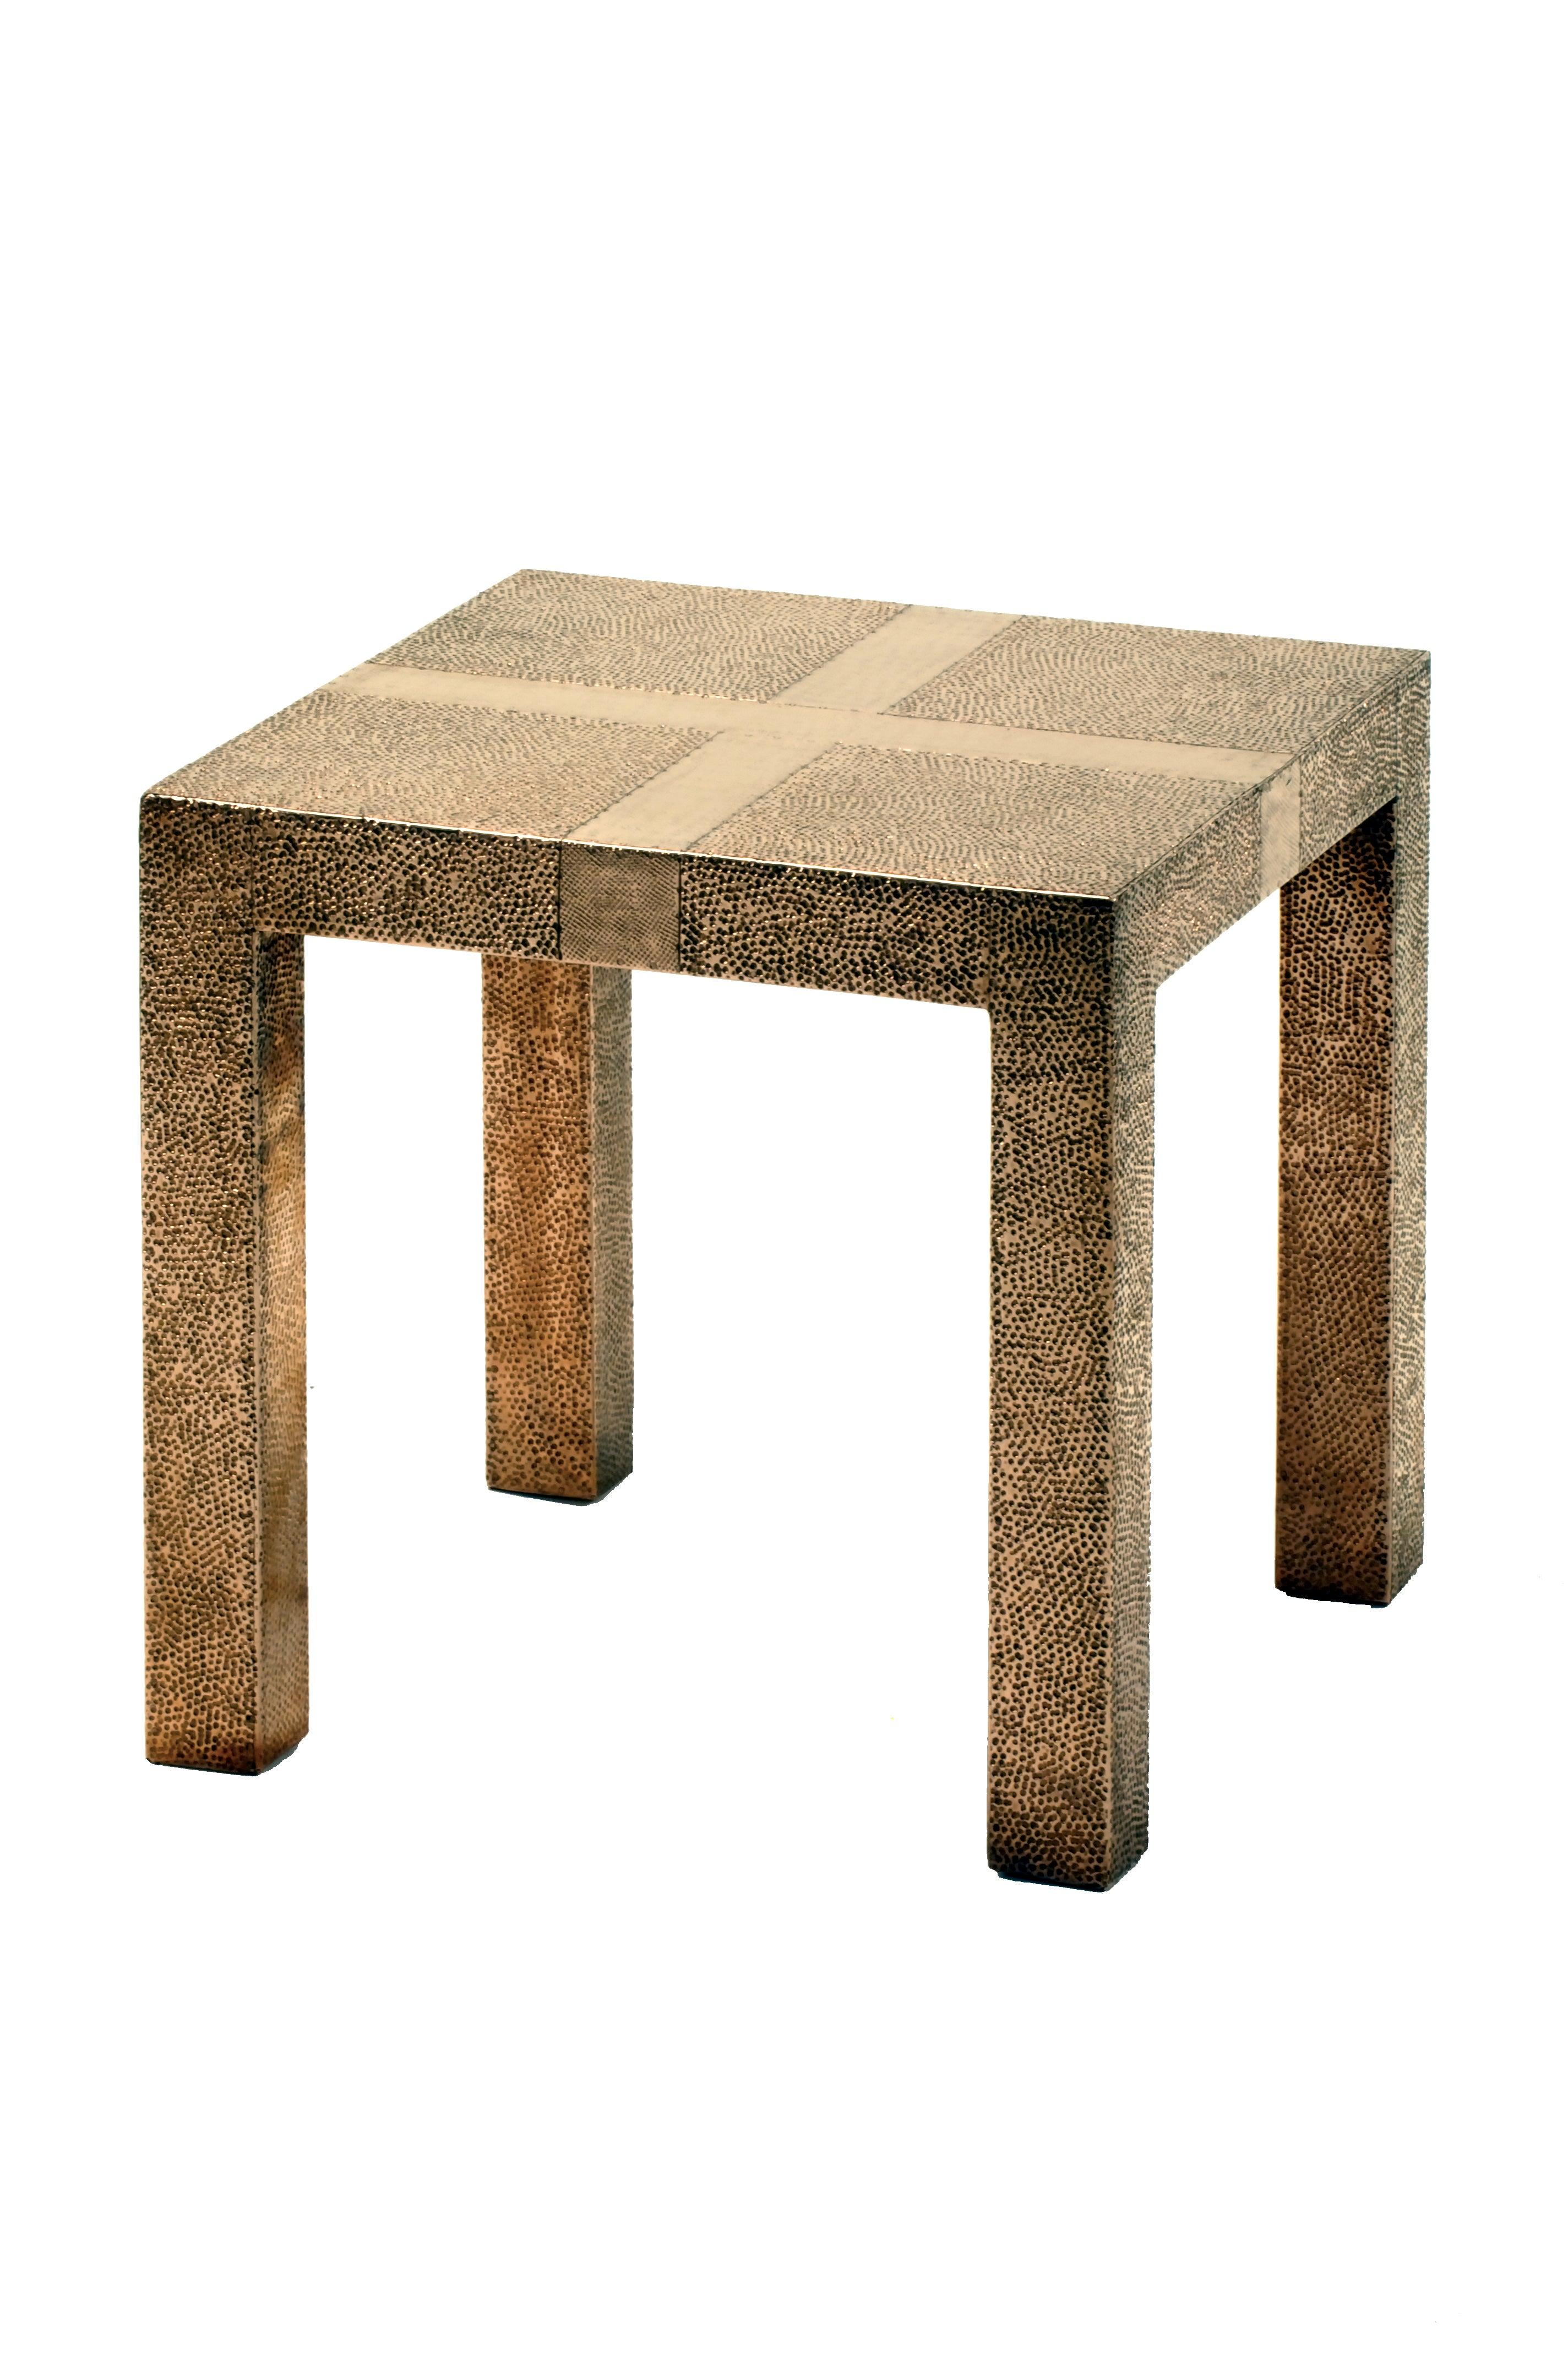 Alison Spear entwarf diesen eleganten und minimalistischen Tisch für Stephanie Odegard während ihrer gemeinsamen Reise nach Rajasthan, Indien. Die Handwerker schaffen mit verschiedenen Hämmerungen Muster in den mit Teakholz verkleideten